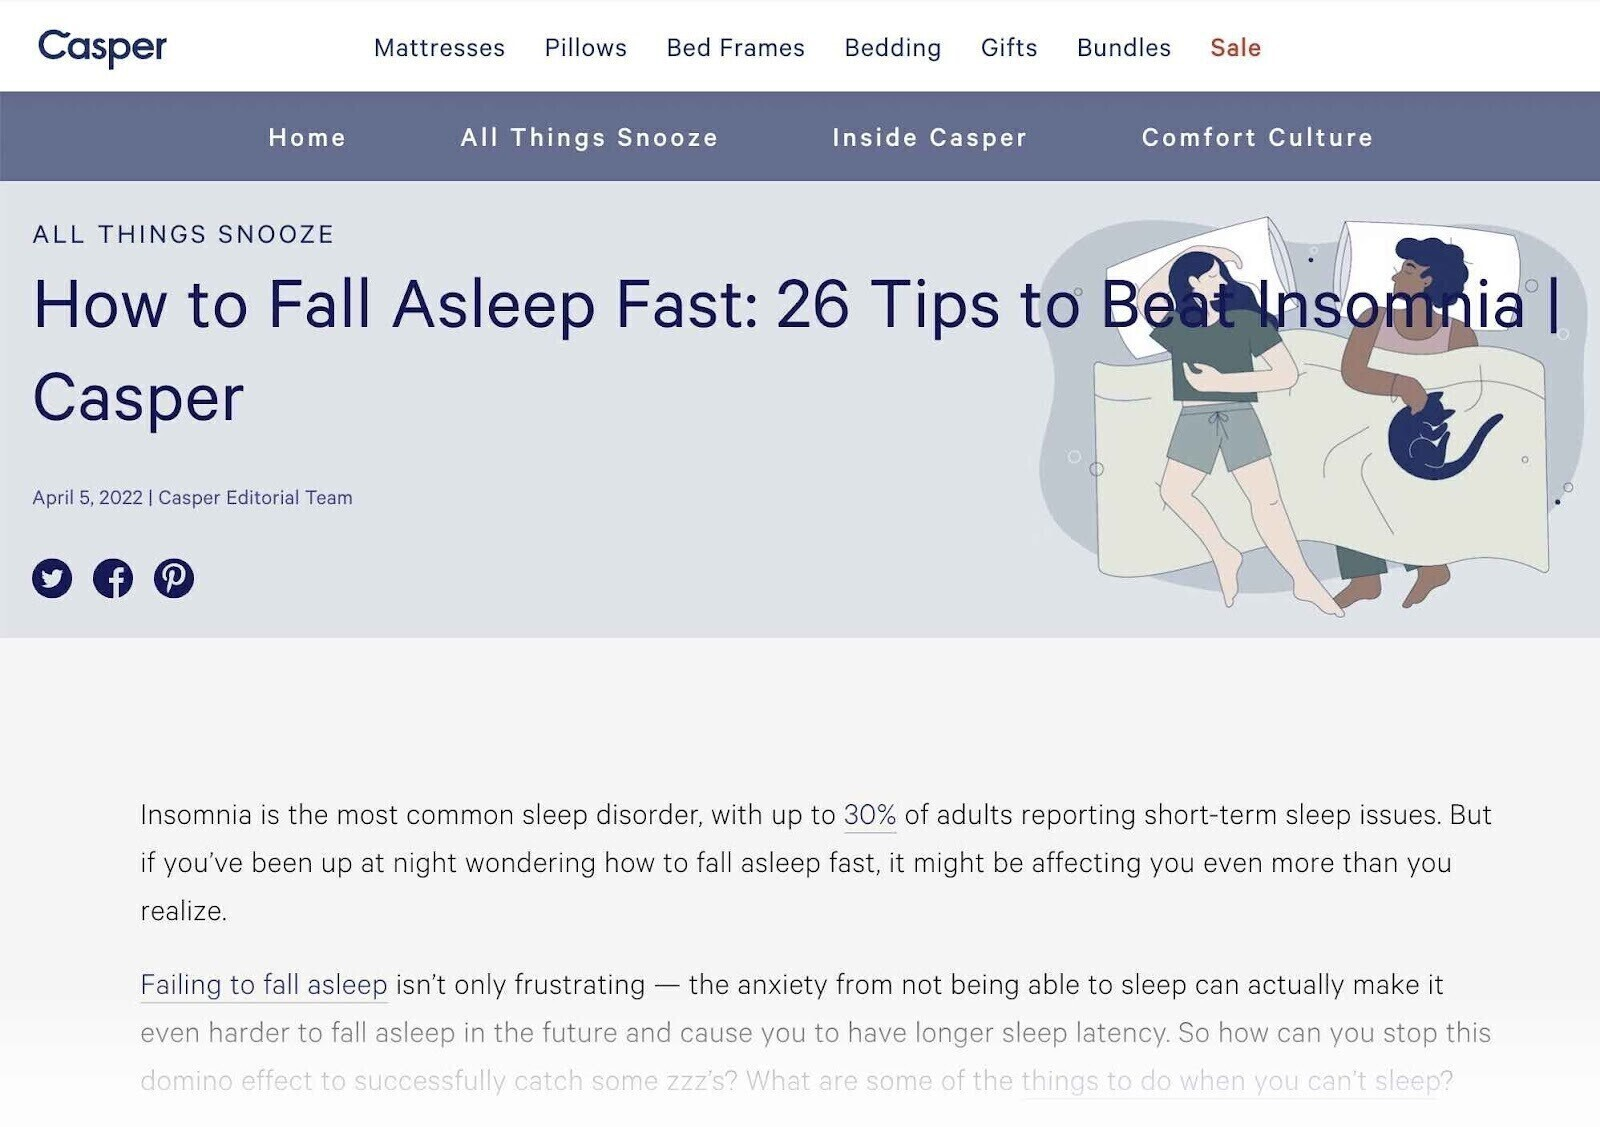 a blog post about ،w to fall asleep fast by mattress ،nd Casper